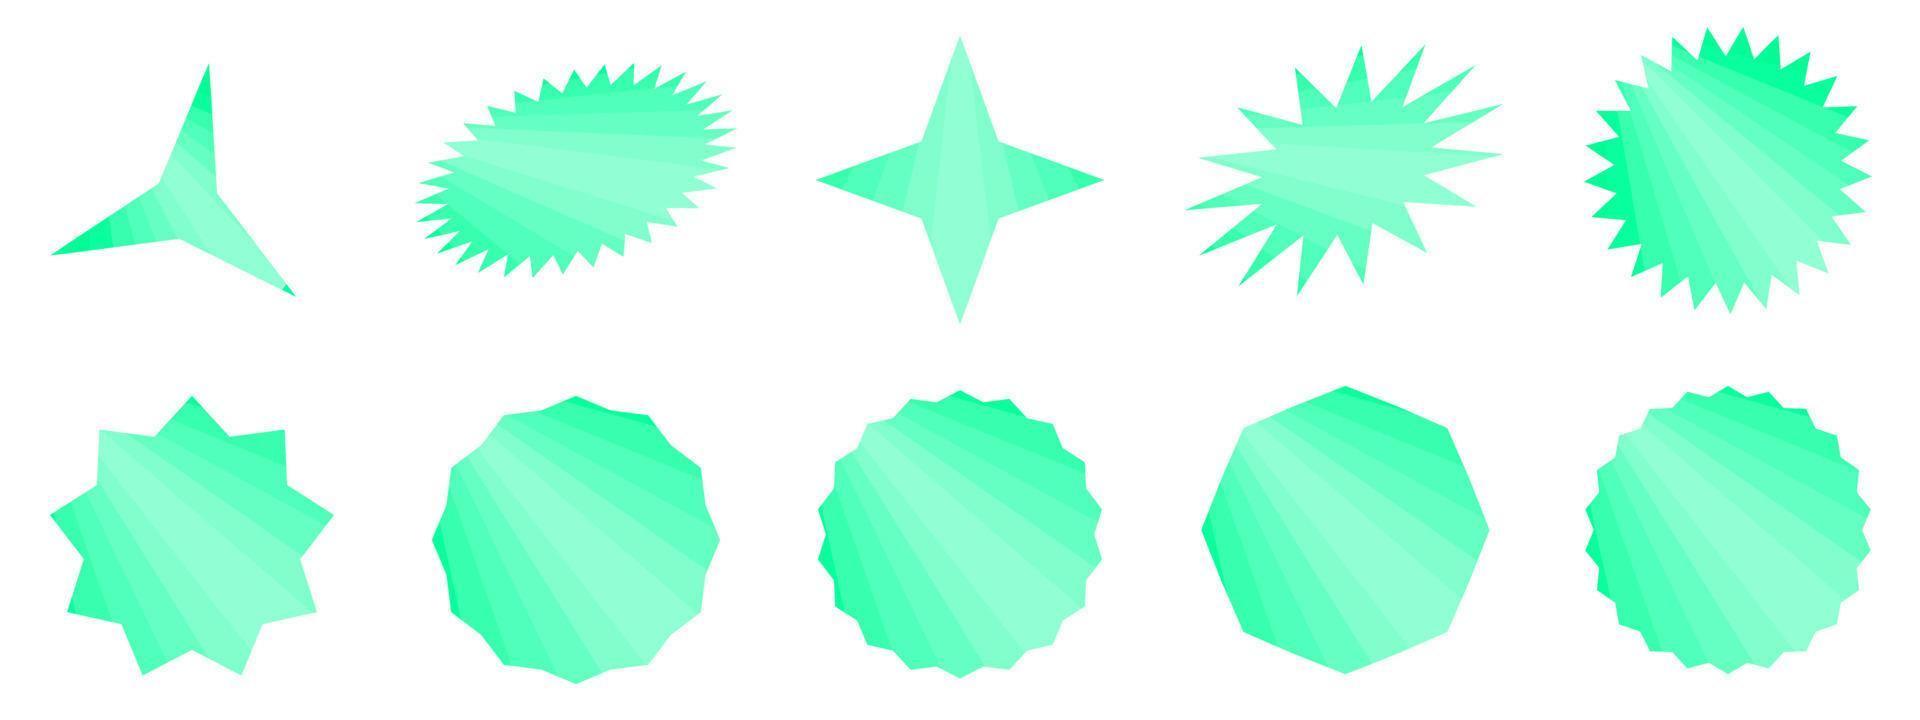 ensemble d'étoiles vertes, illustration vectorielle de motif de texture de fond abstrait vecteur